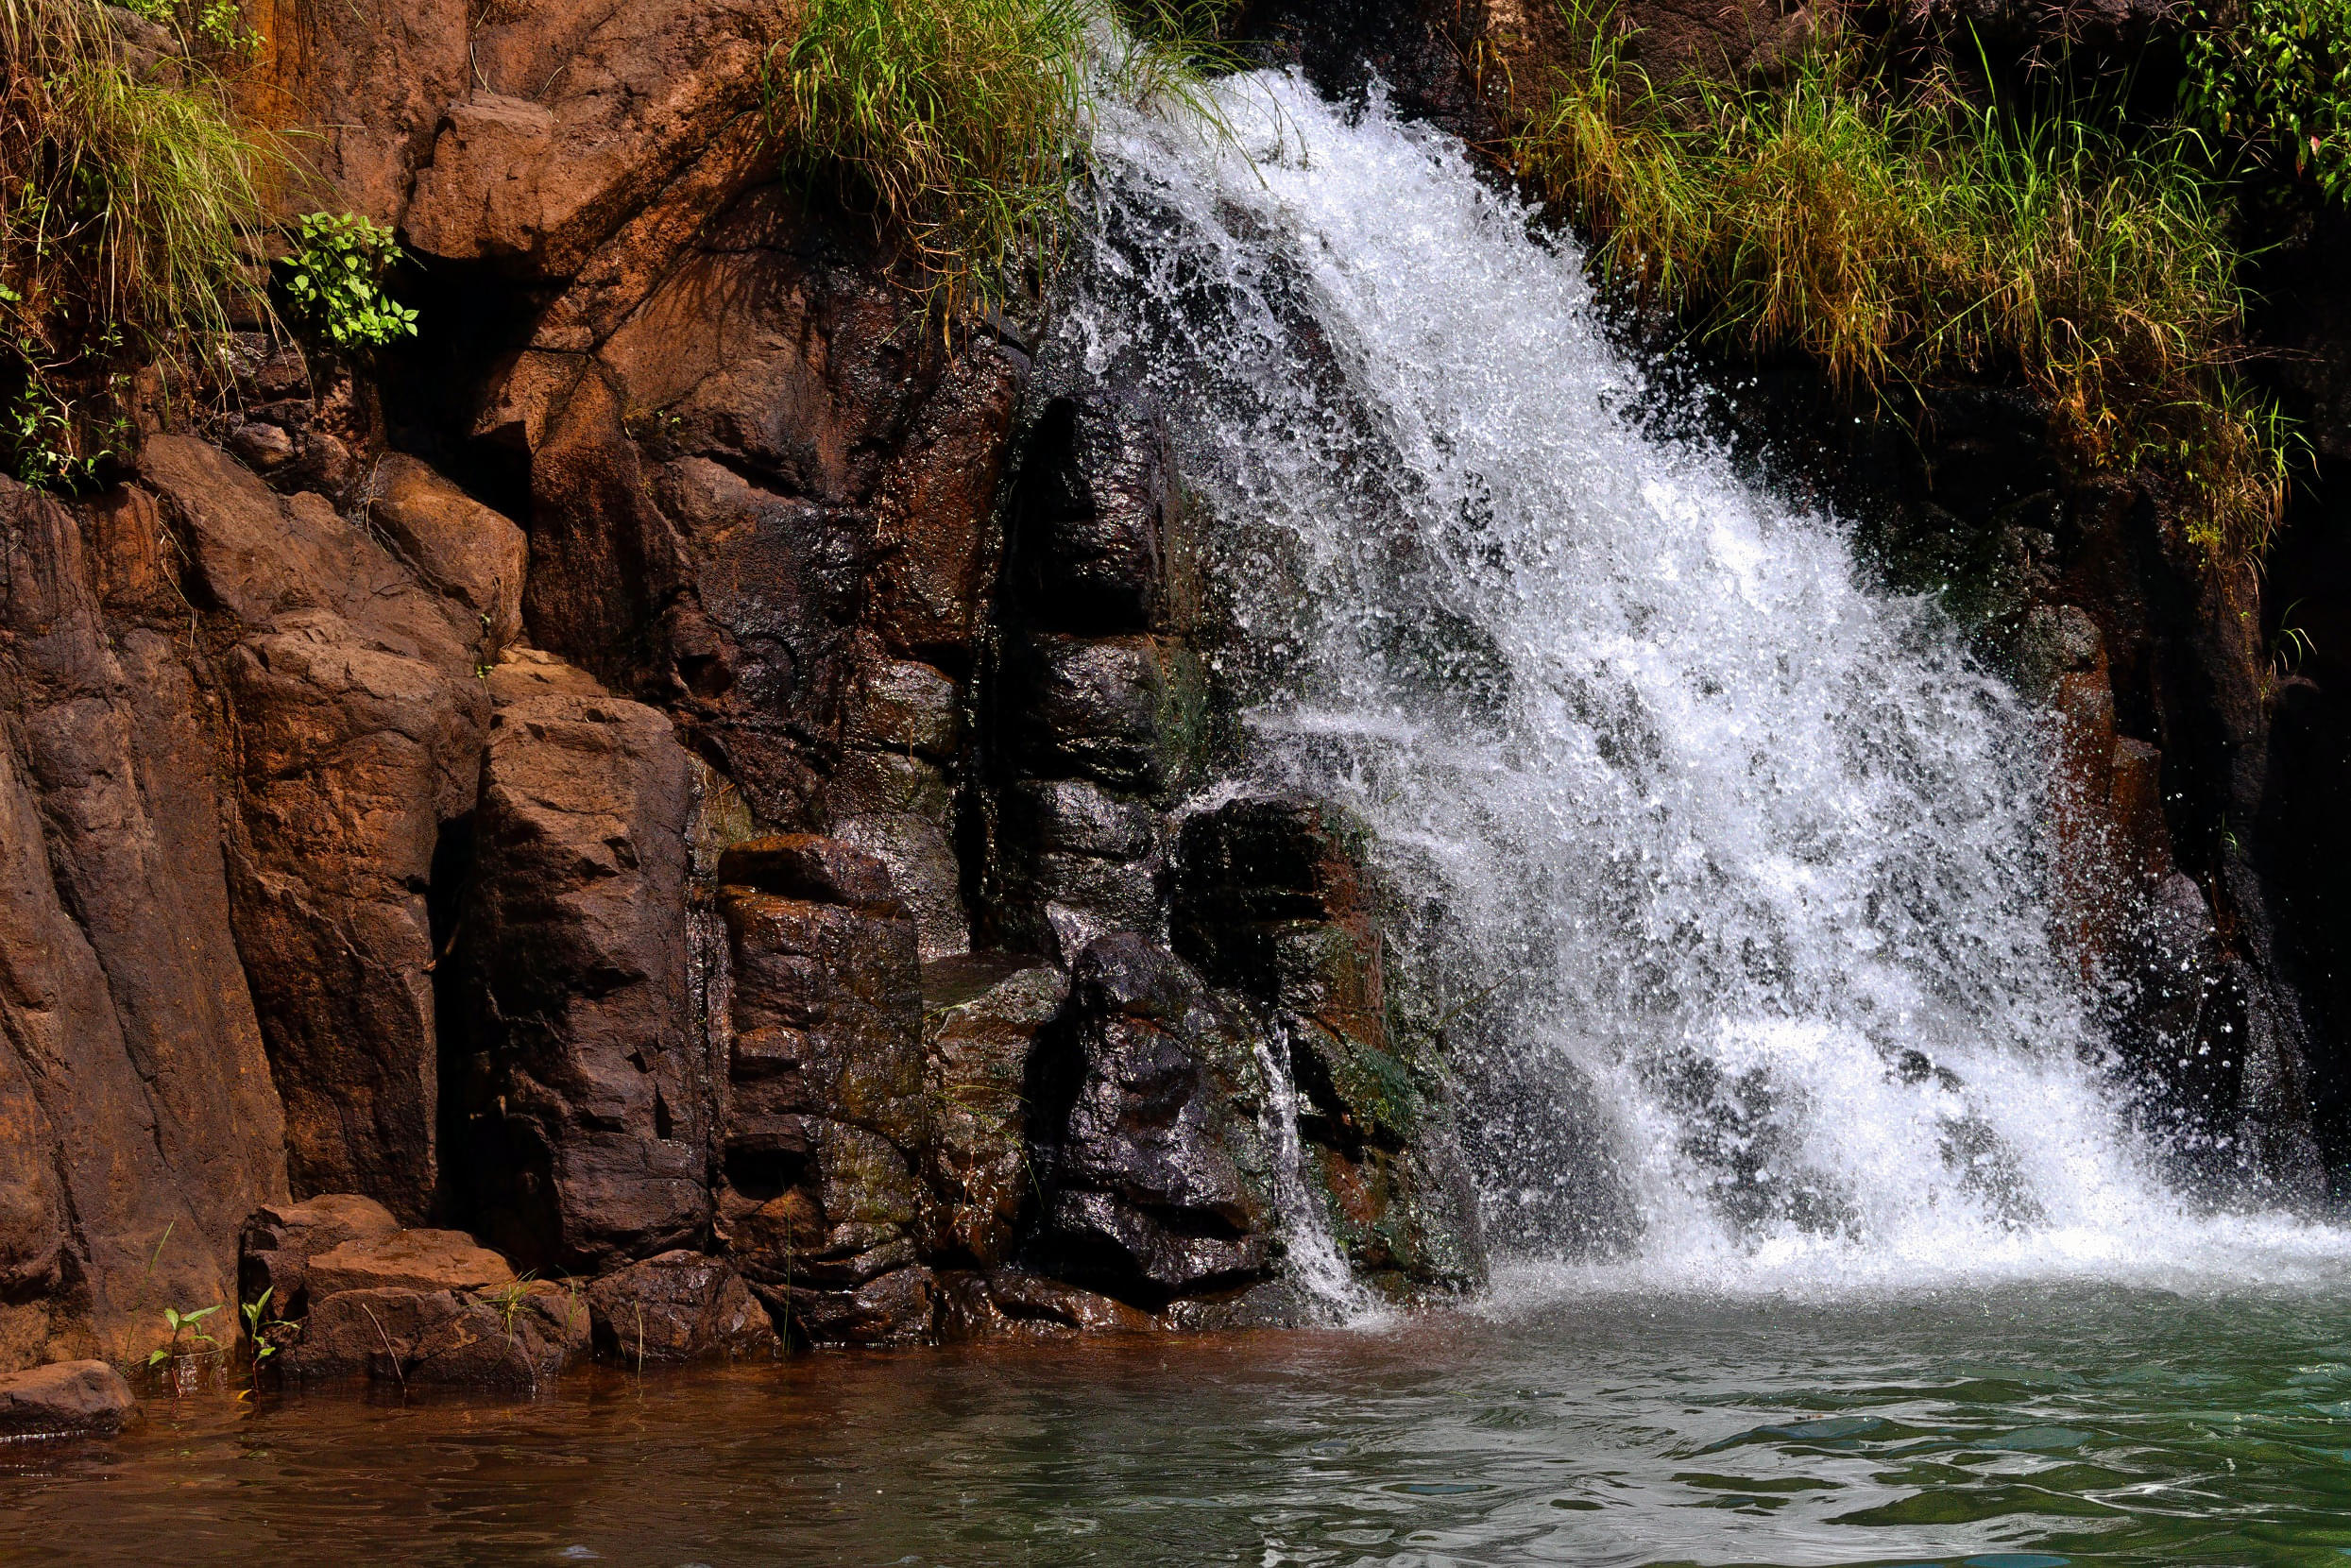 Lingmala Waterfall Overview